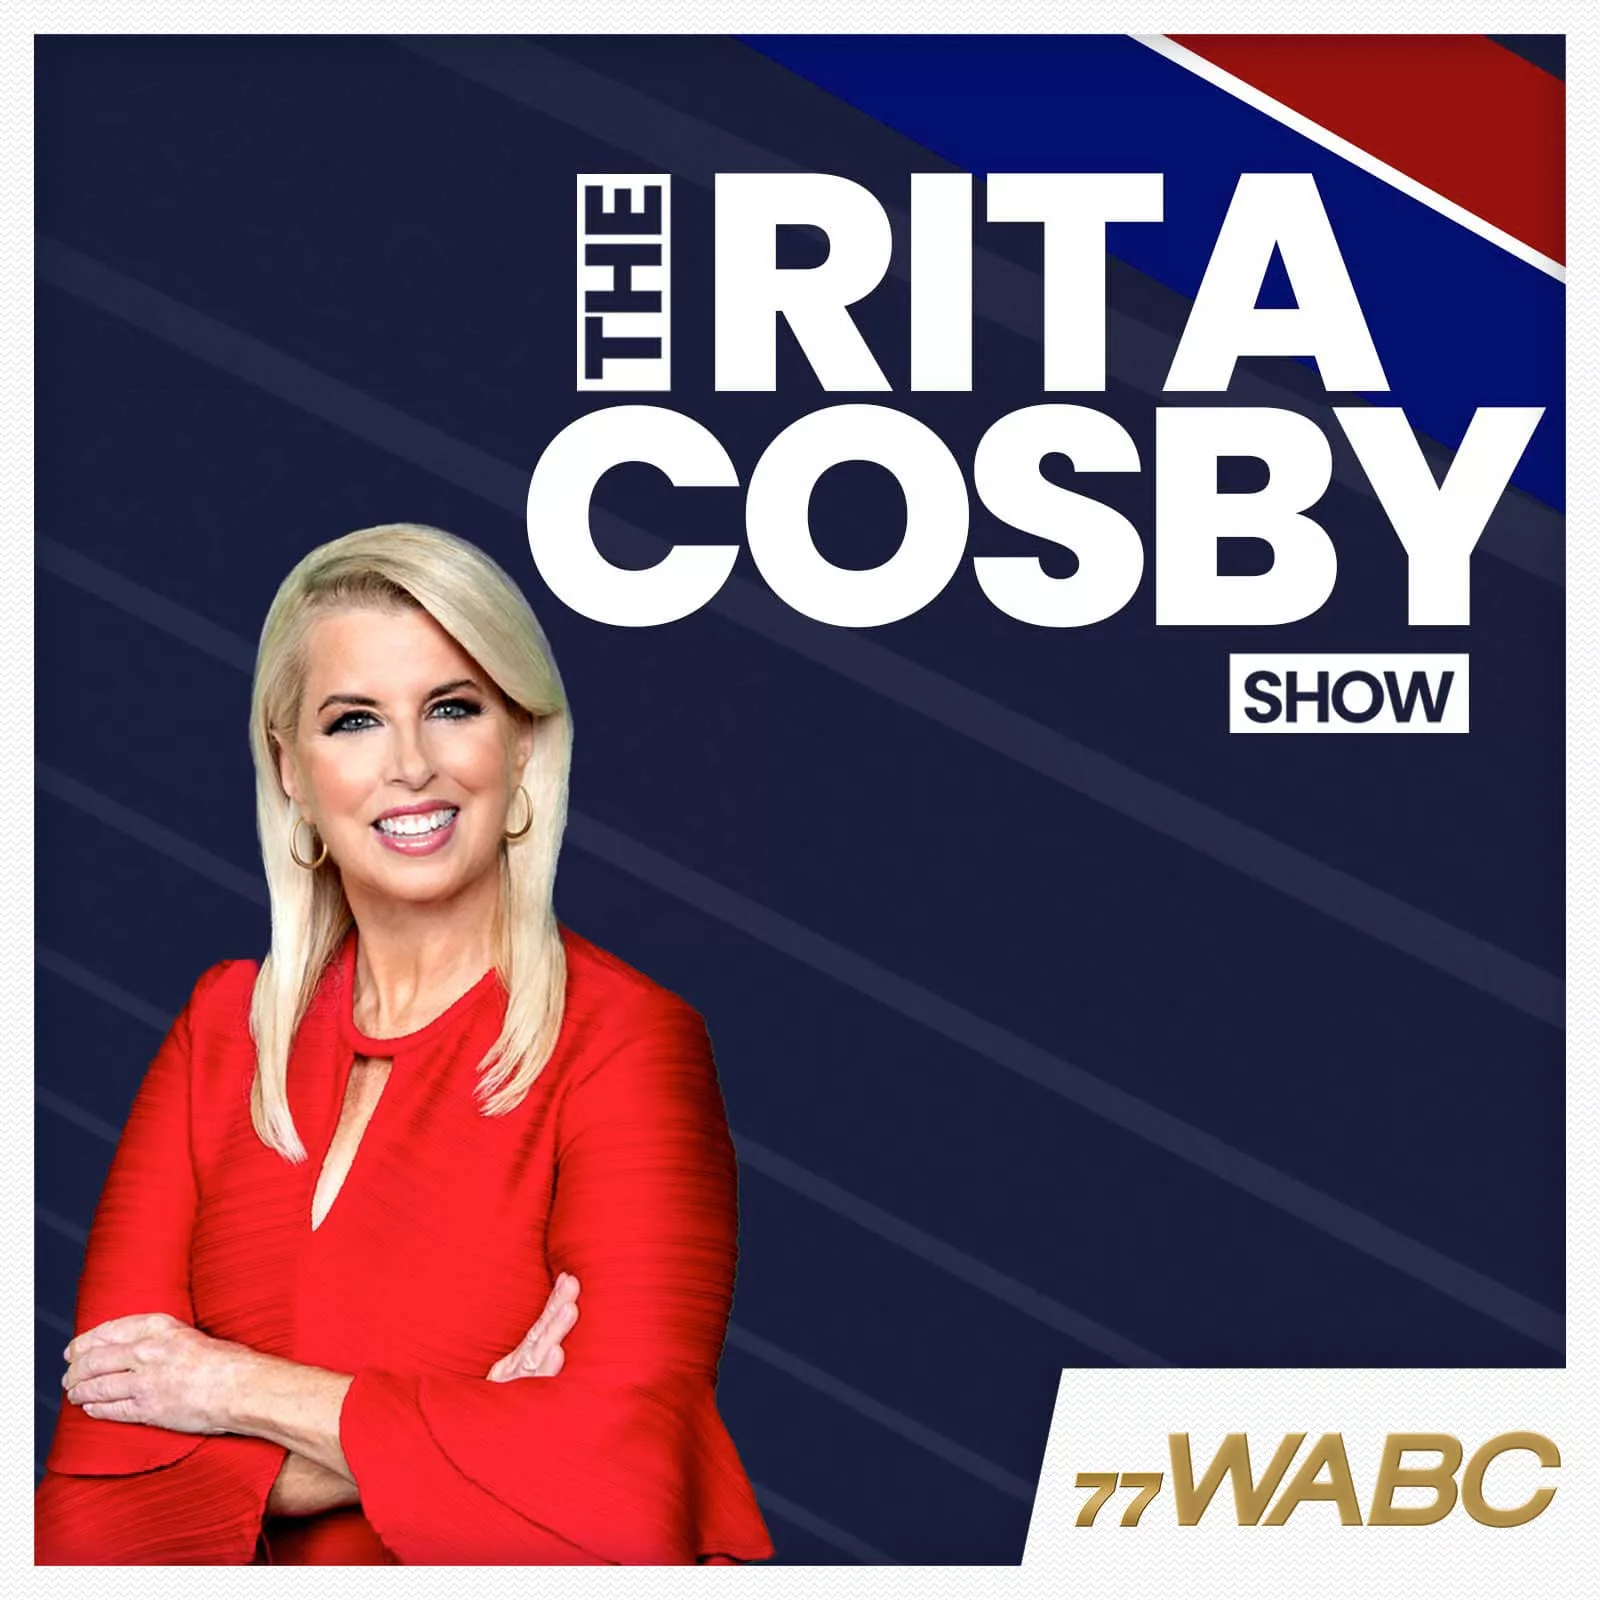 rita-cosby-podcast-new-logo160501